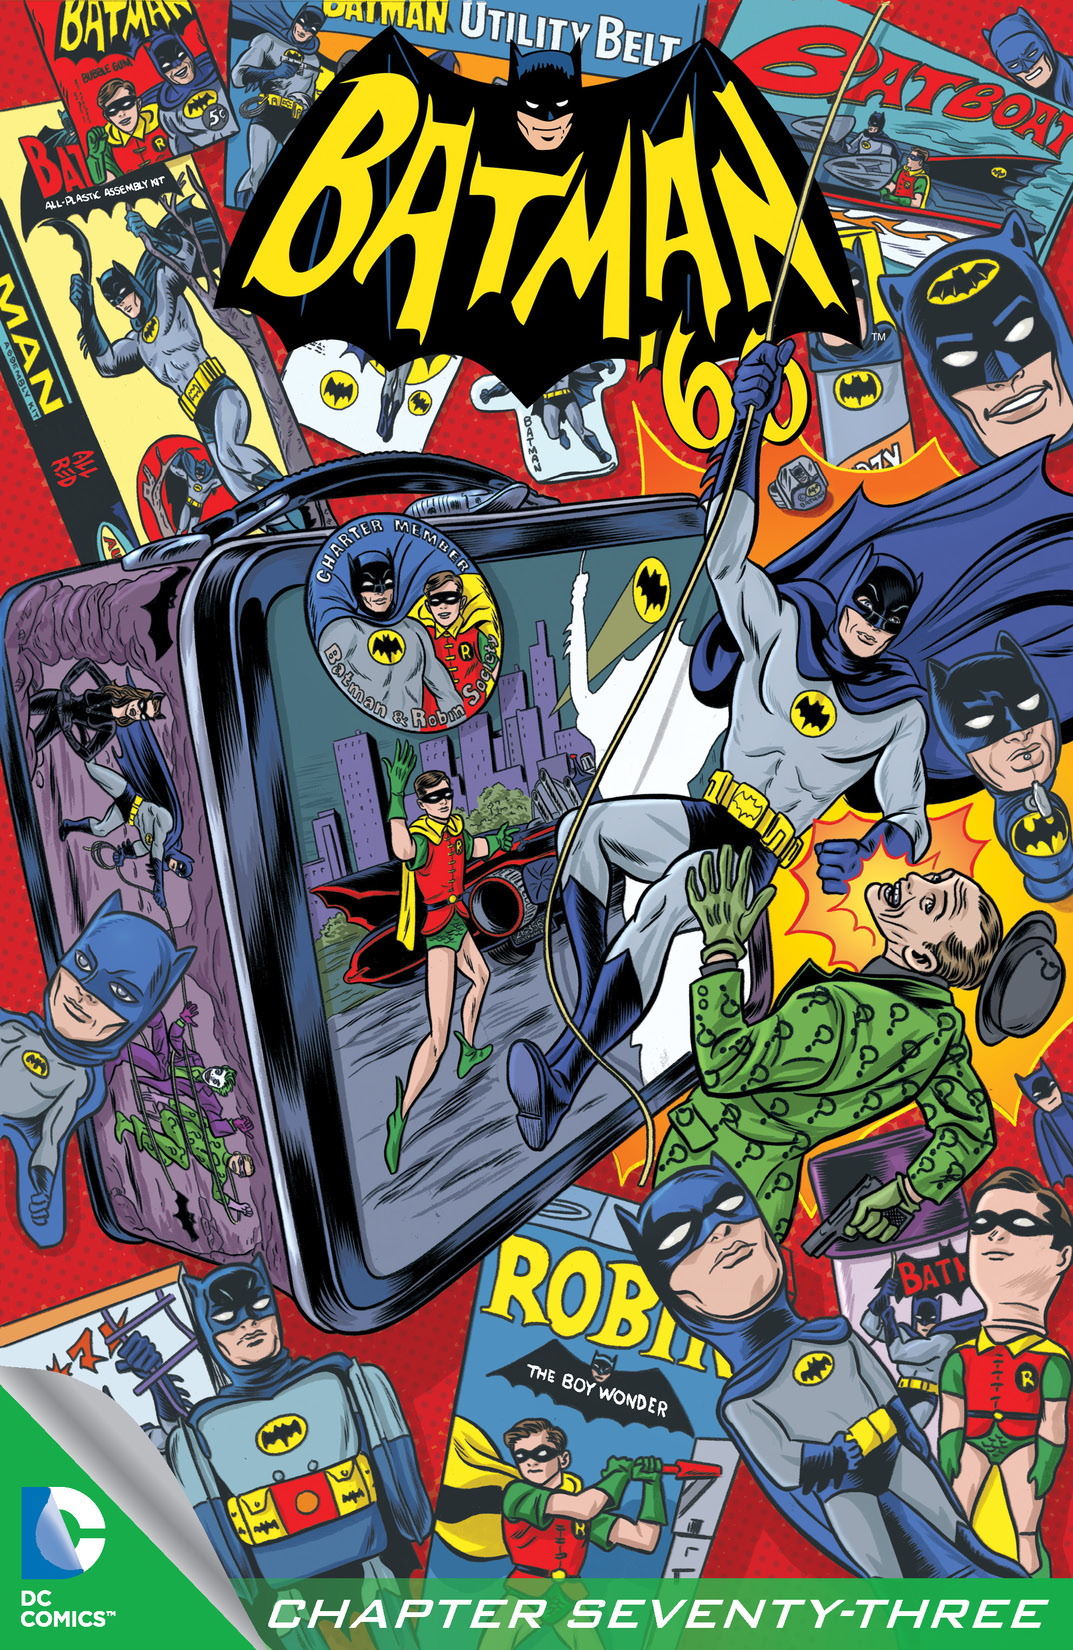 Batman '66 #73 preview images